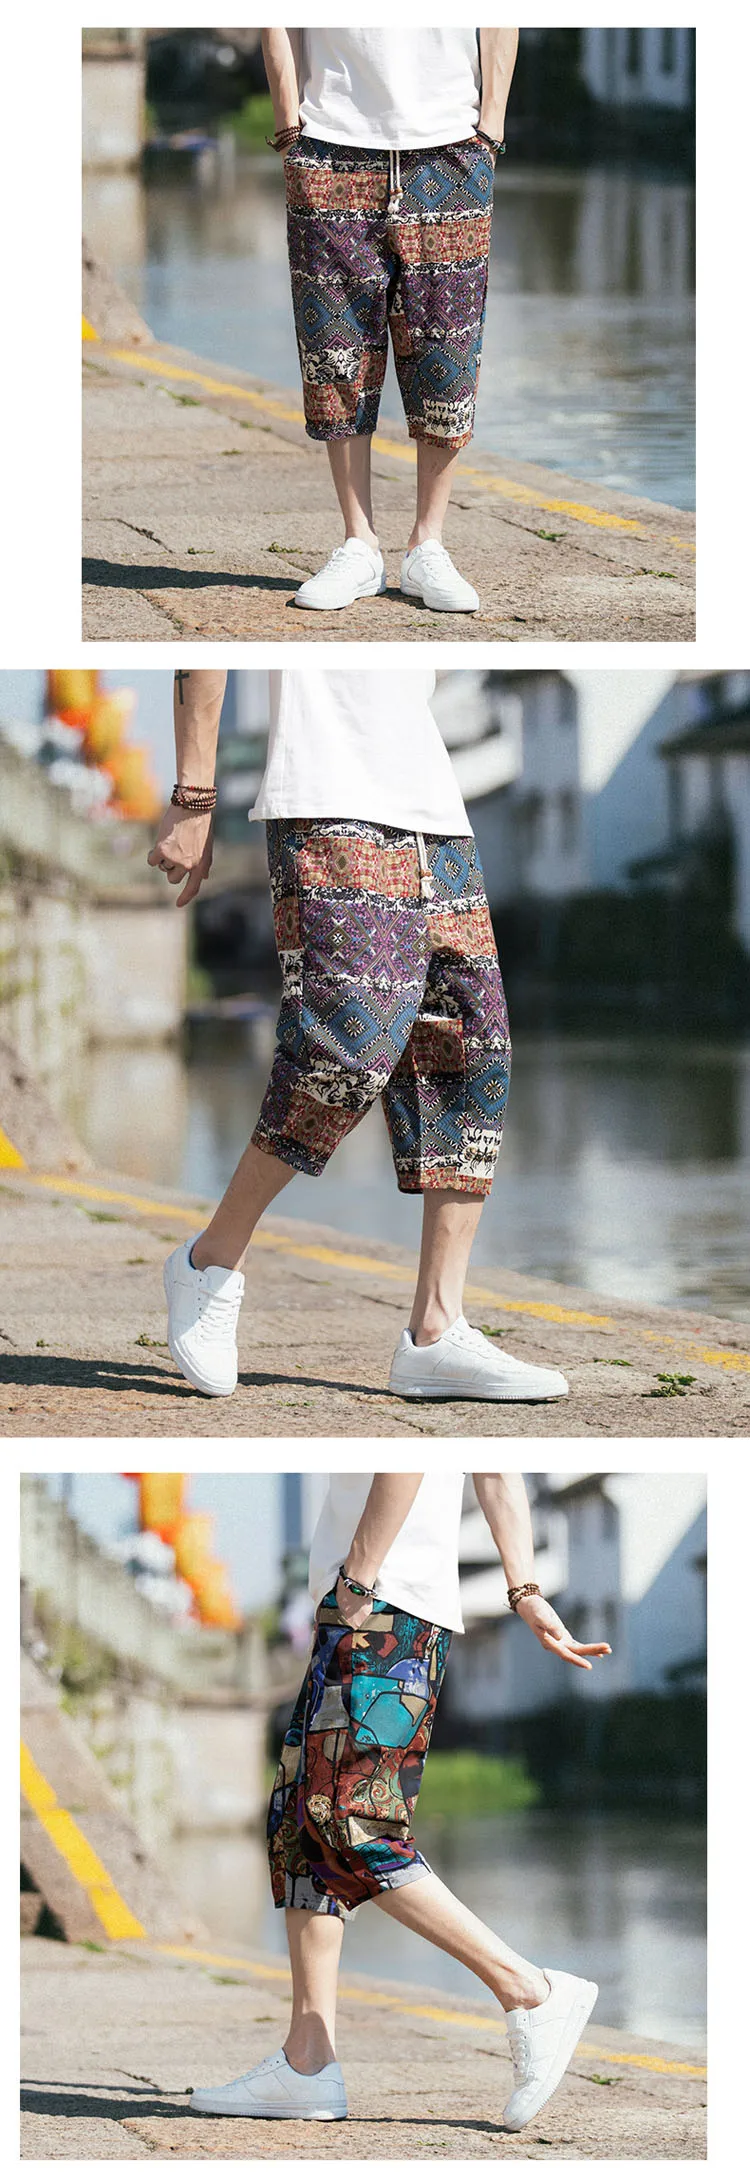 JDDTON мужские новые ретро свободные шорты с принтом пляжные спортивные Шорты повседневные традиционные японские шорты с цветочным принтом укороченные брюки JE022